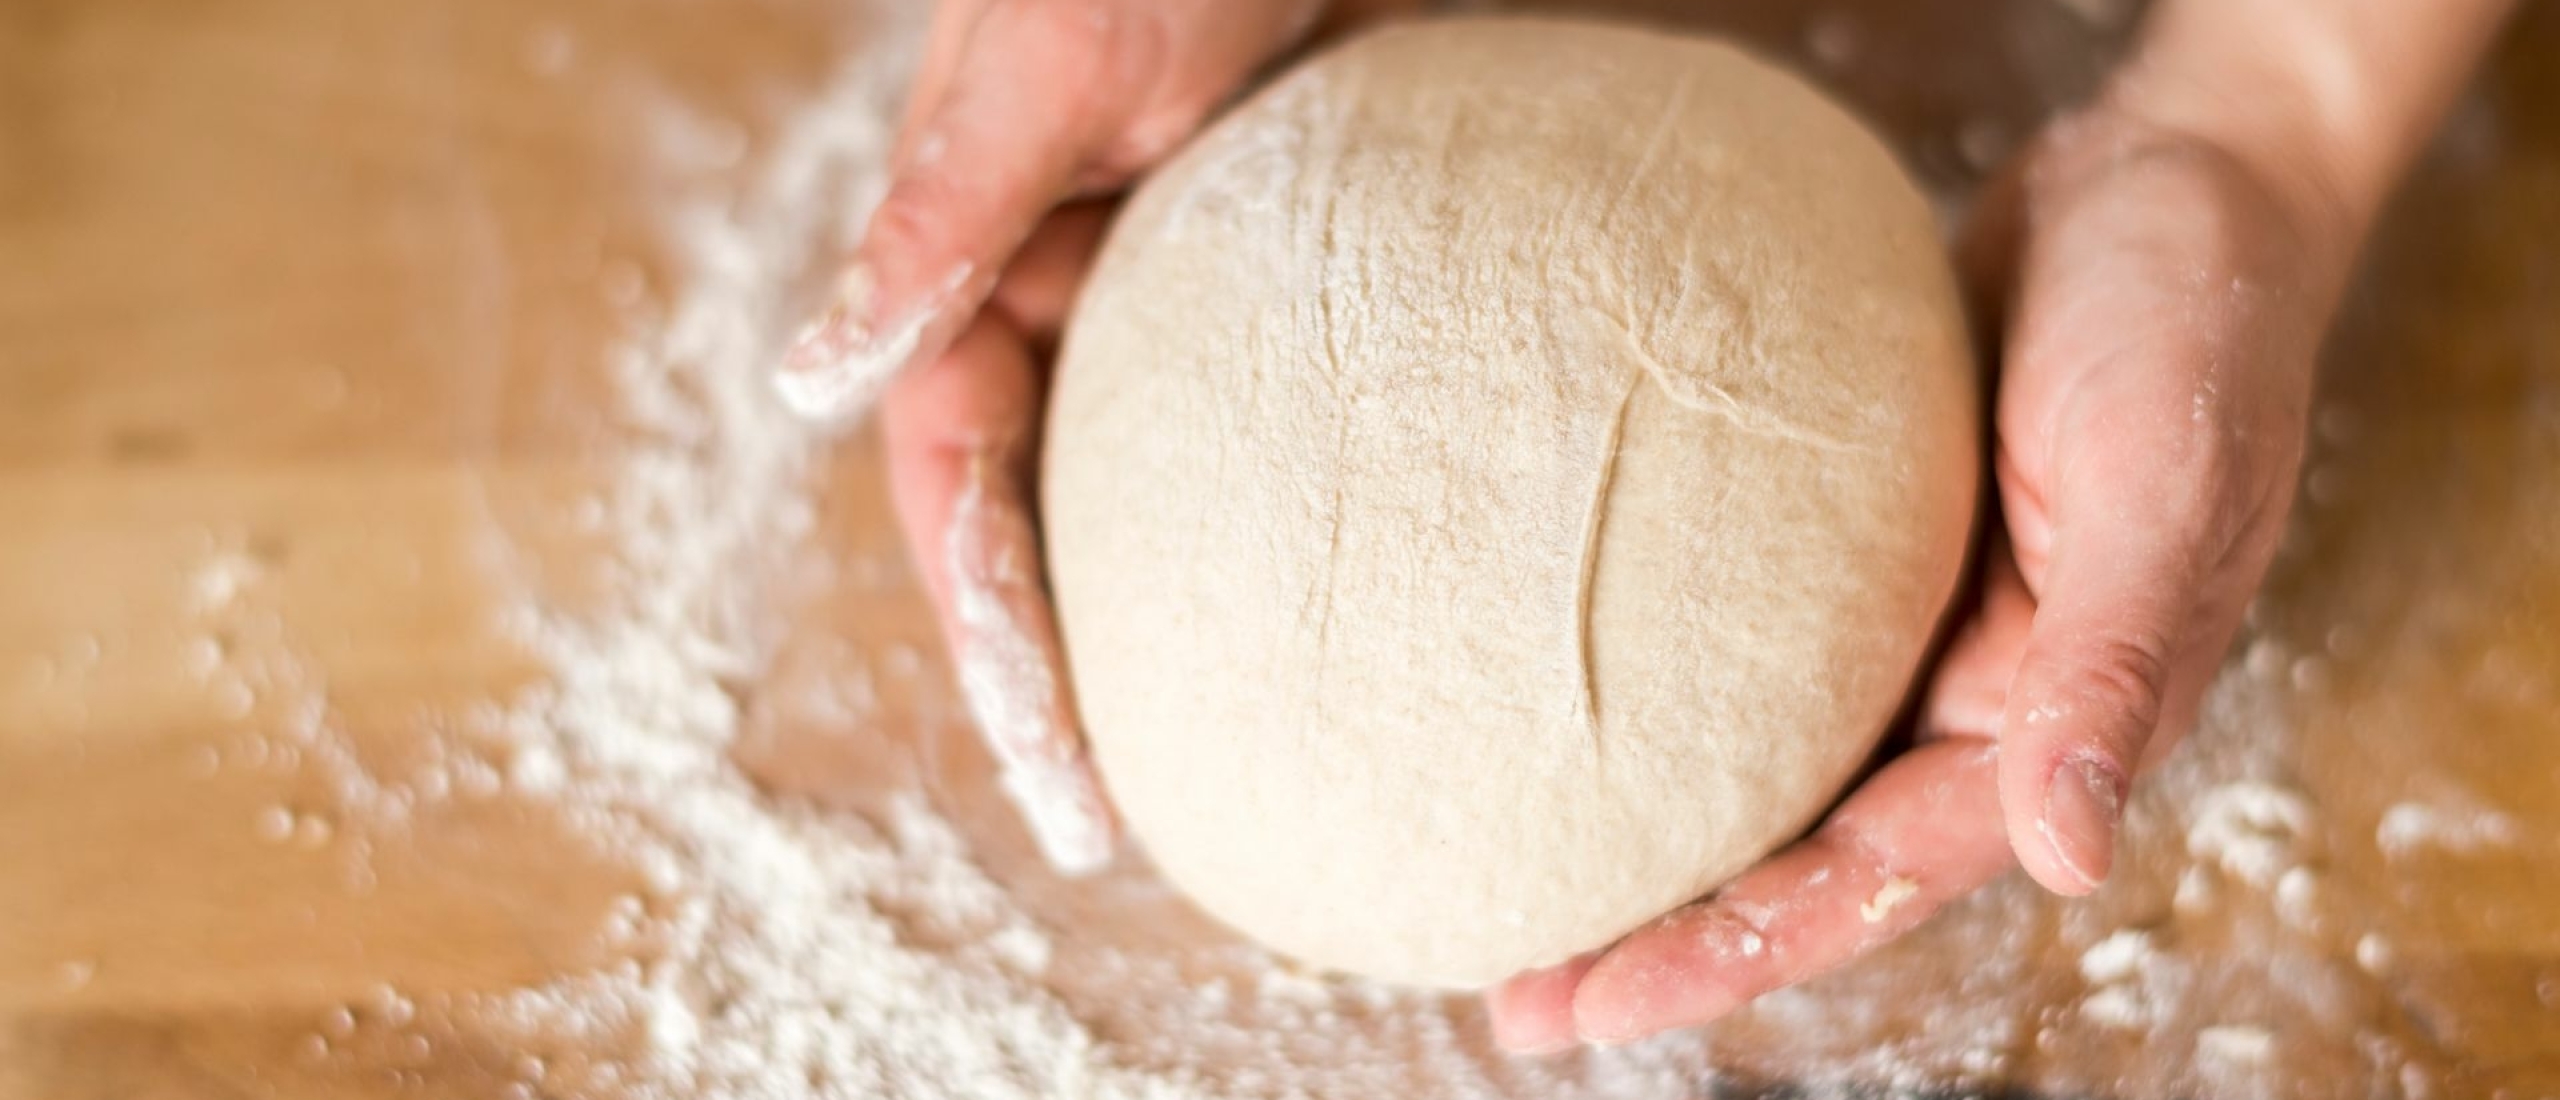 Online cursus brood bakken - De leukste op een rijtje!